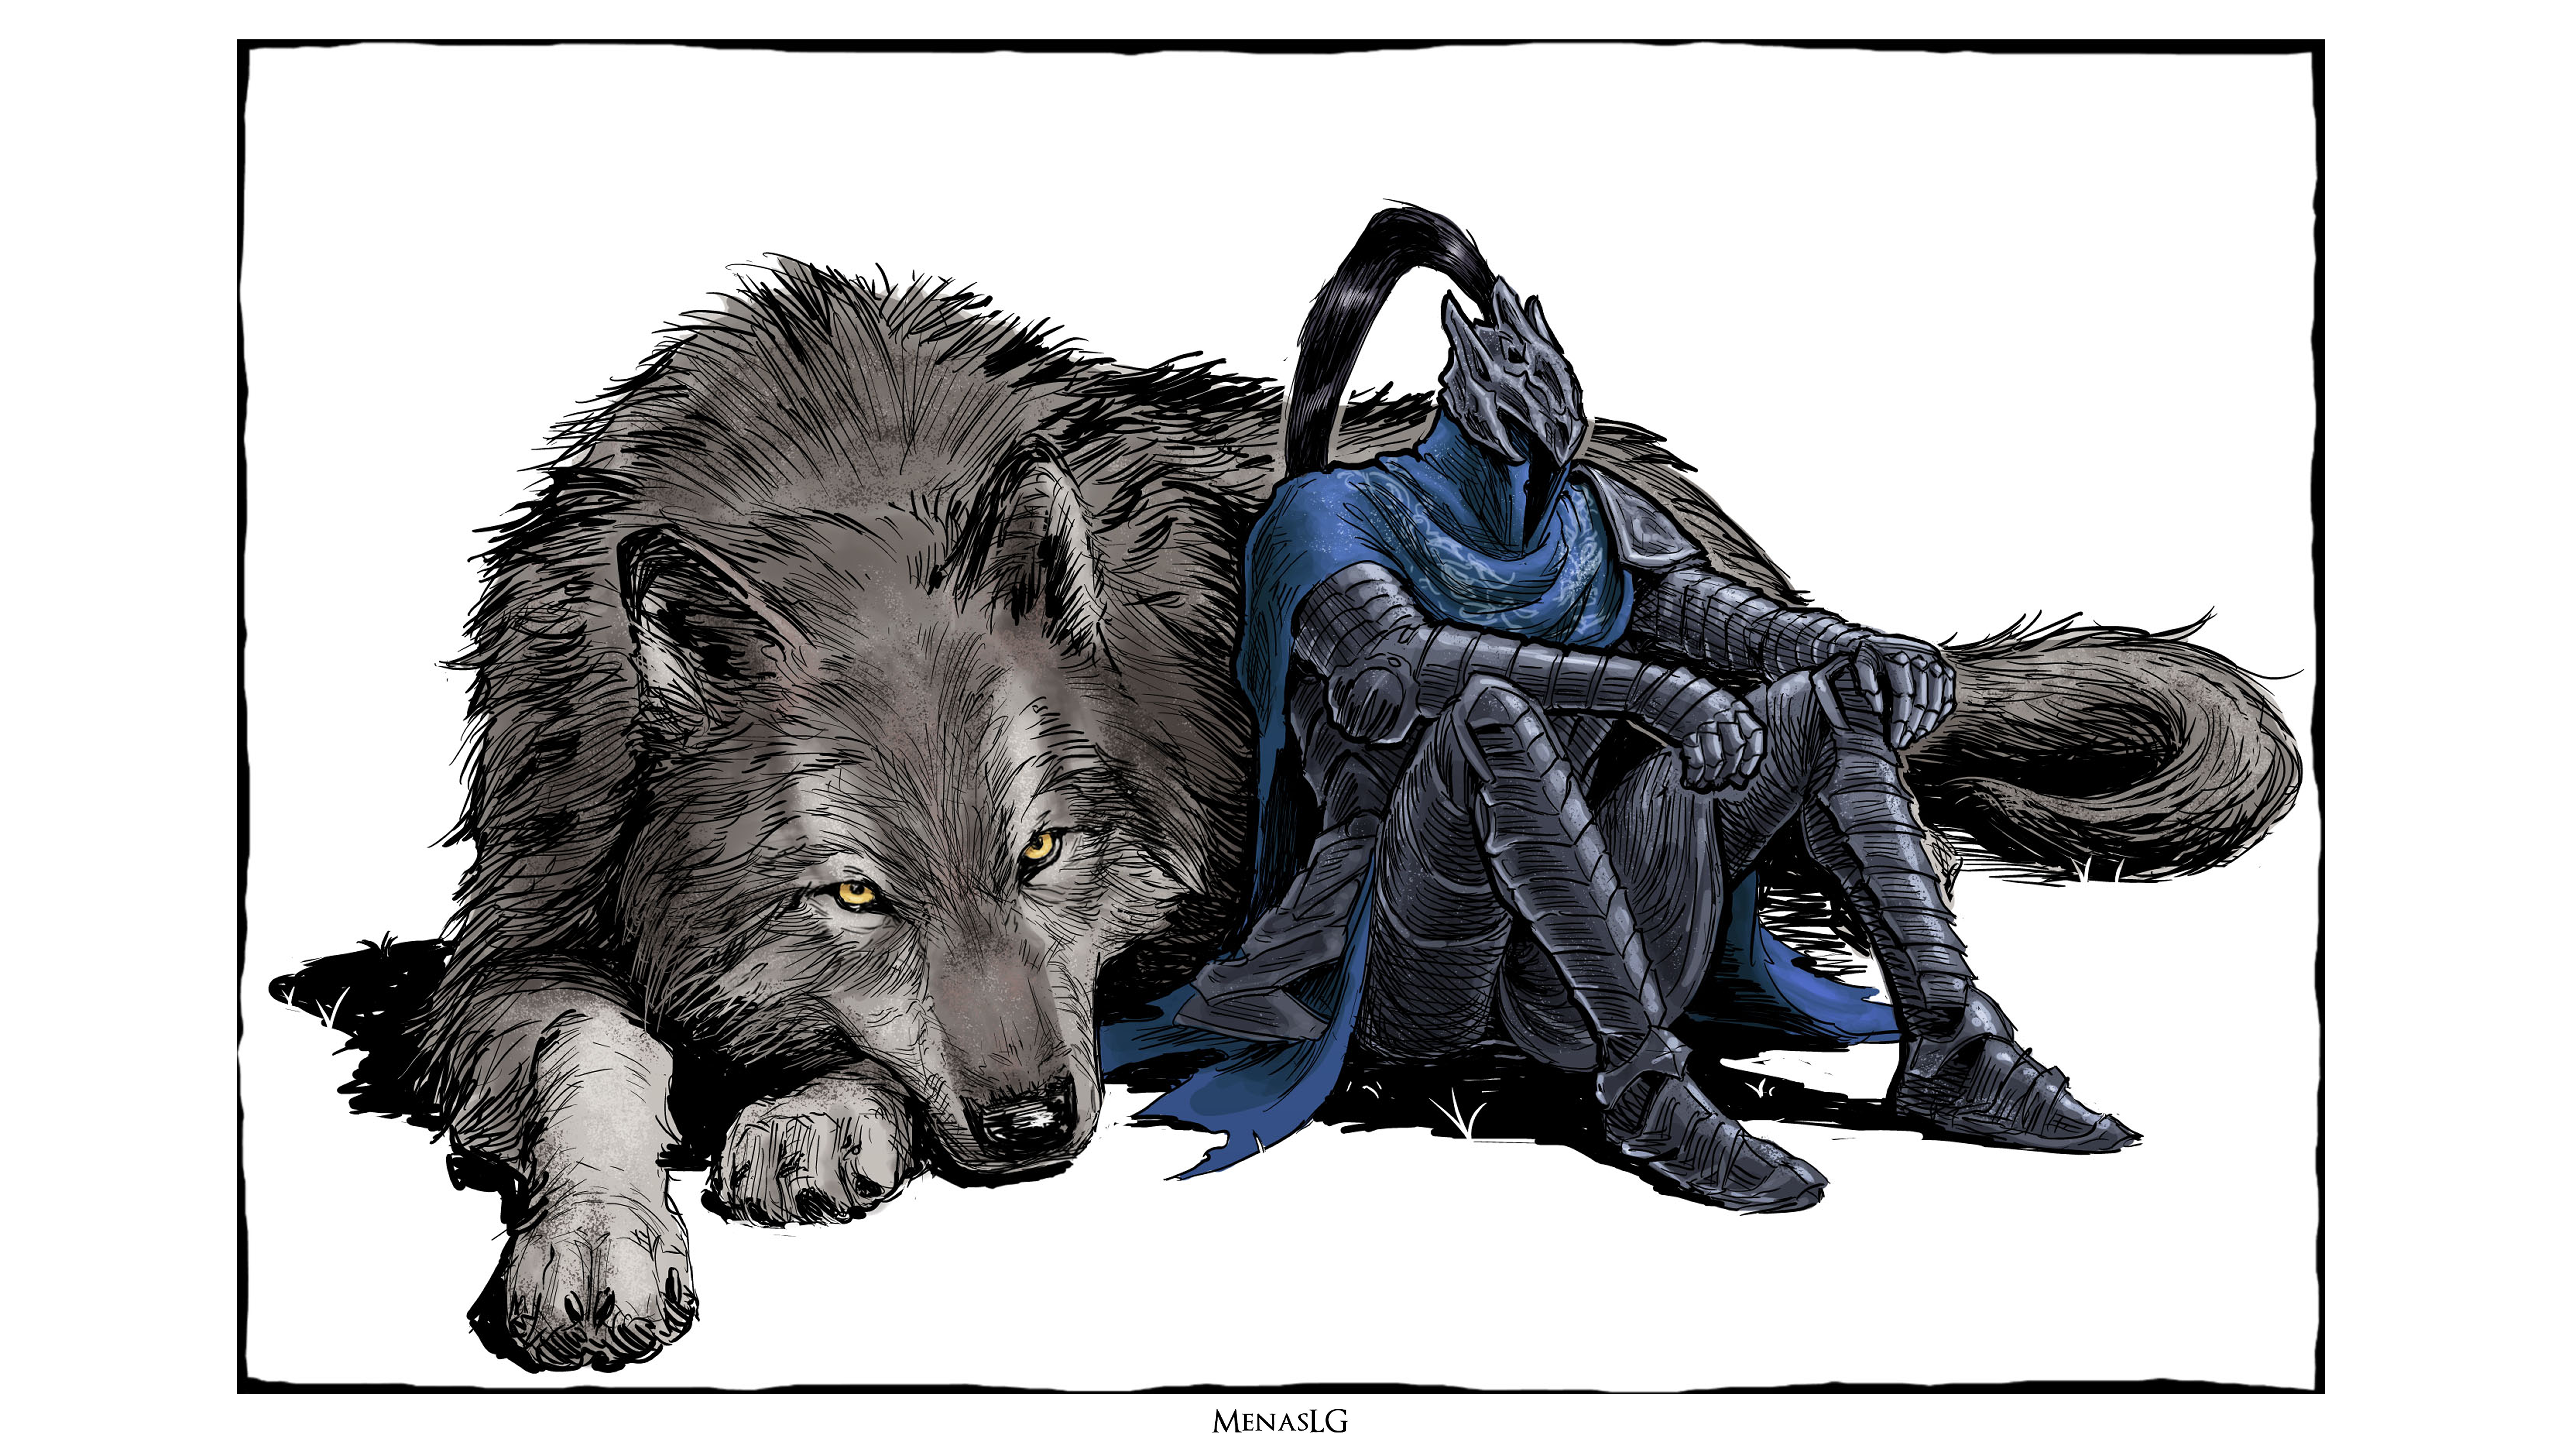 Dark Souls Artorias The Abysswalker Sword Armor Knight Wolf Menaslg  Wallpaper - Resolution:2560x1440 - ID:1215334 